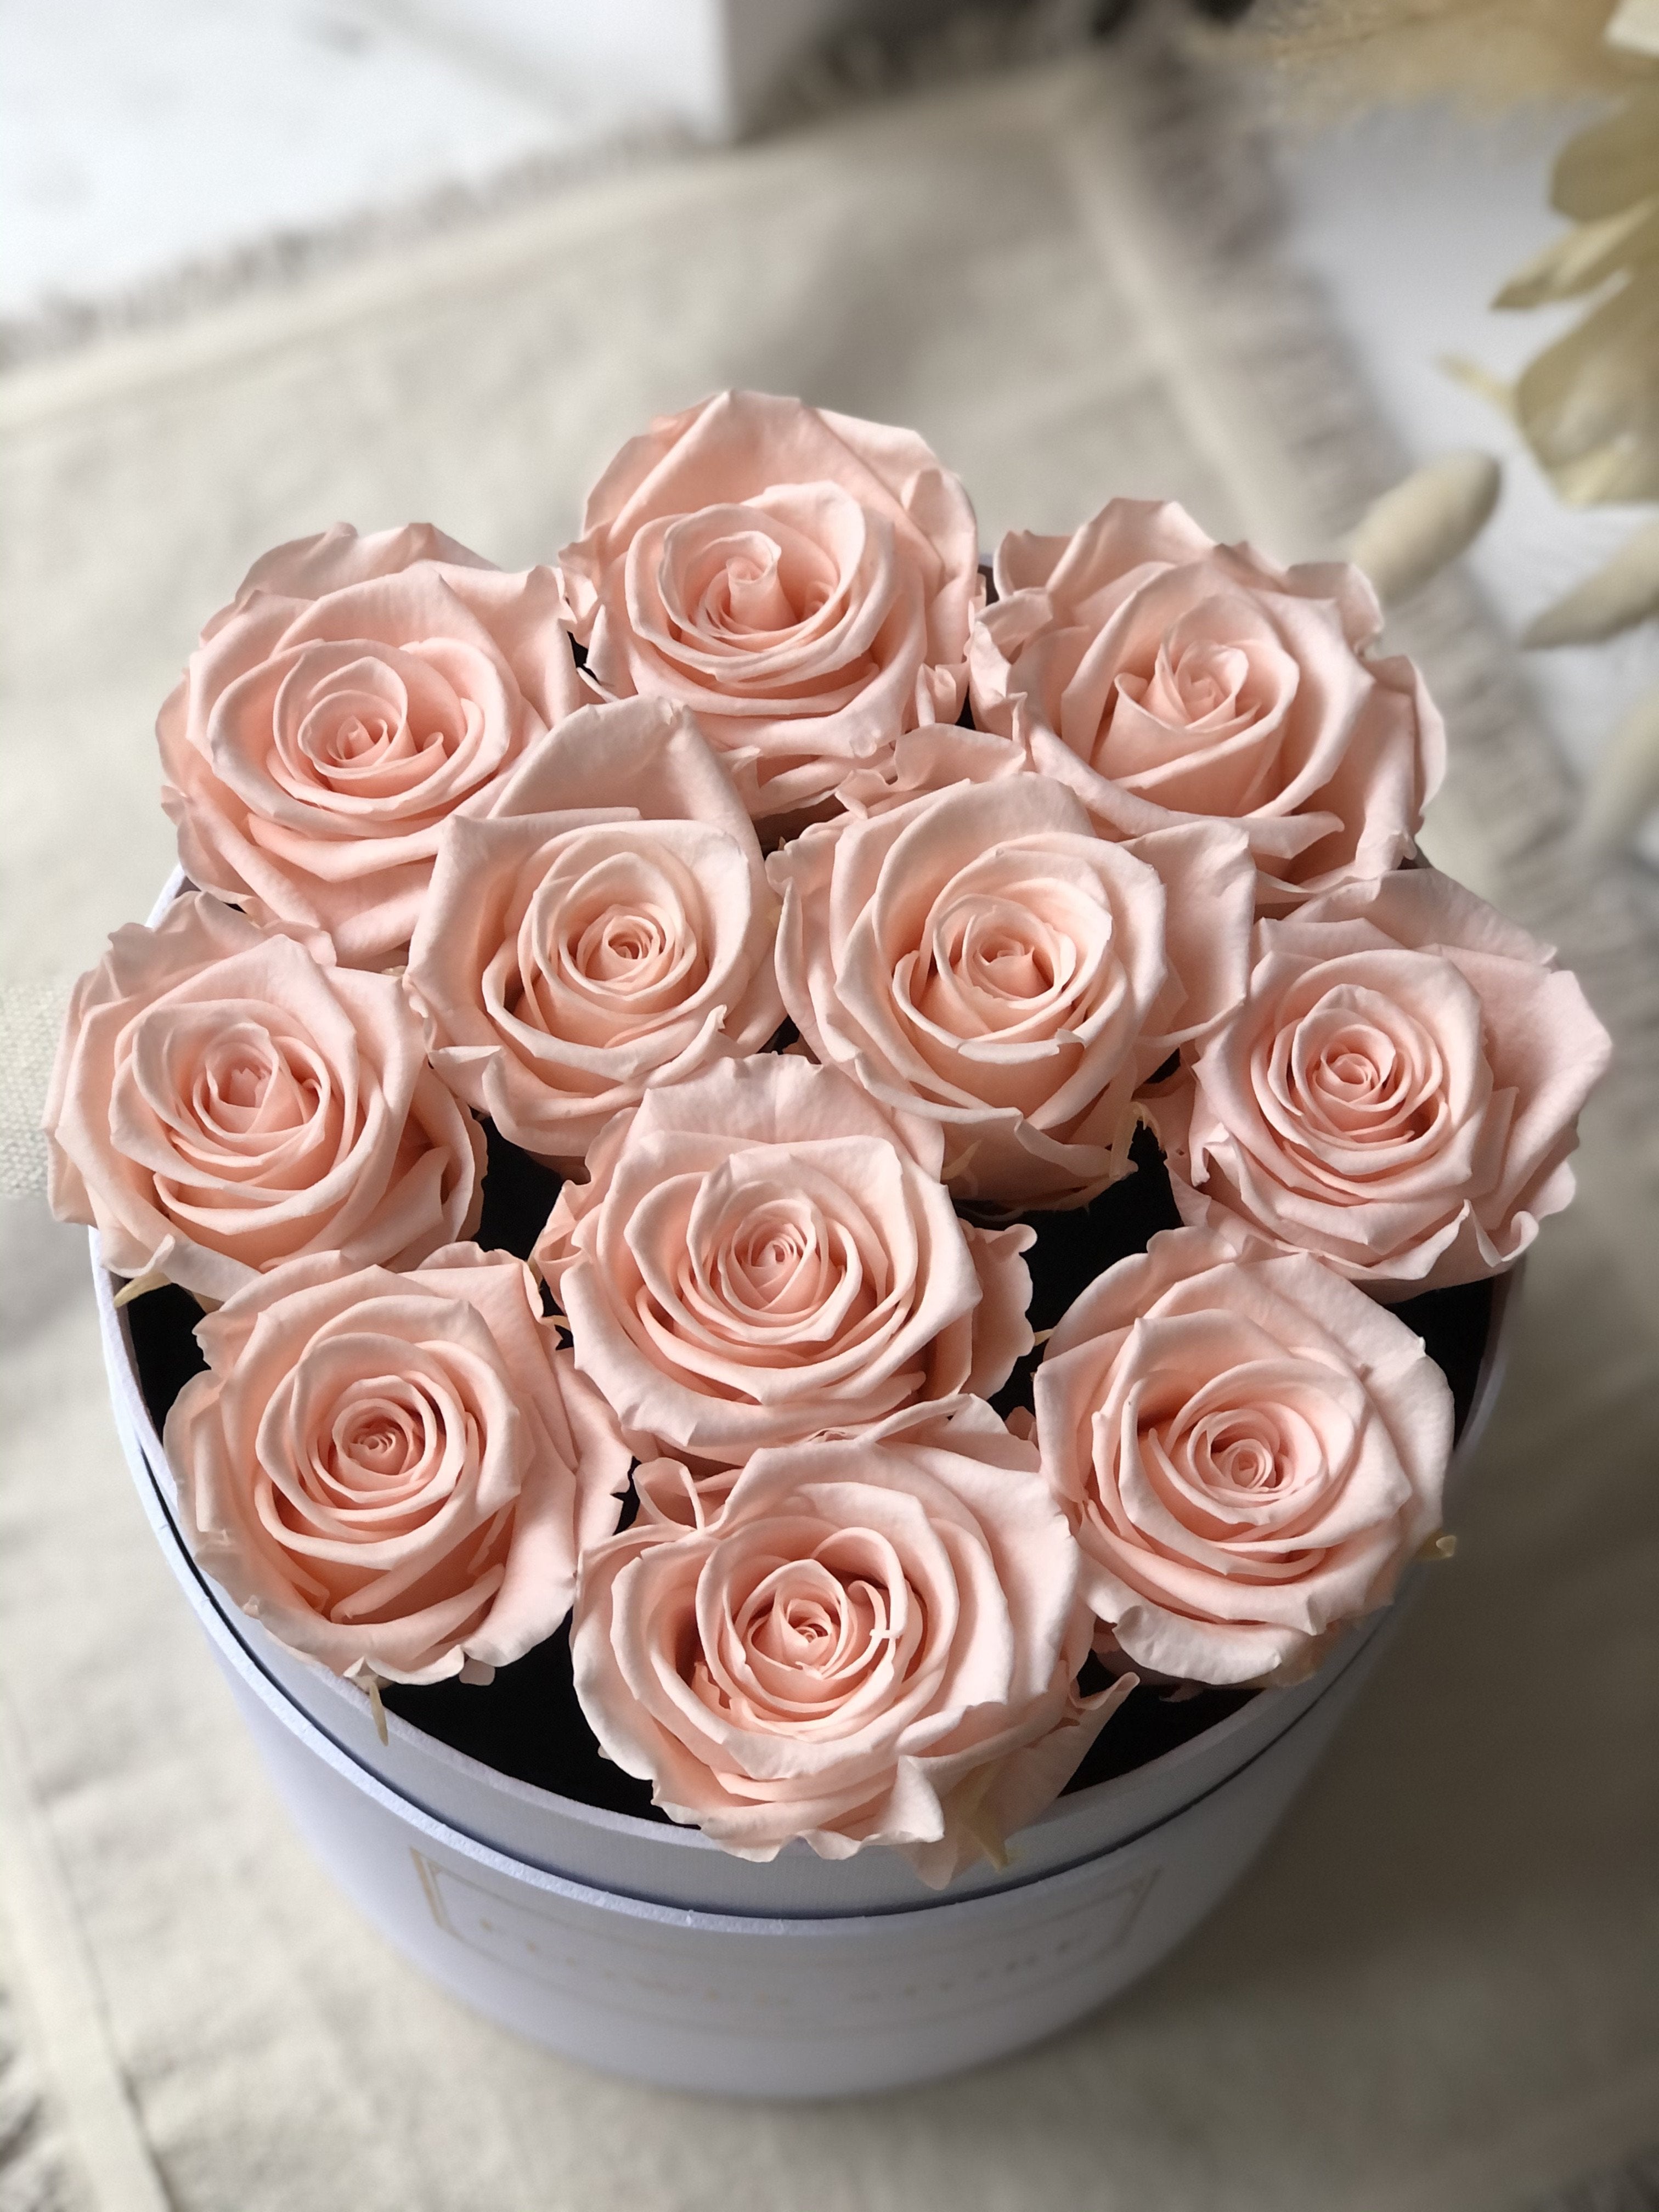 Белая коробочка с бледно-розовыми вечными розами.